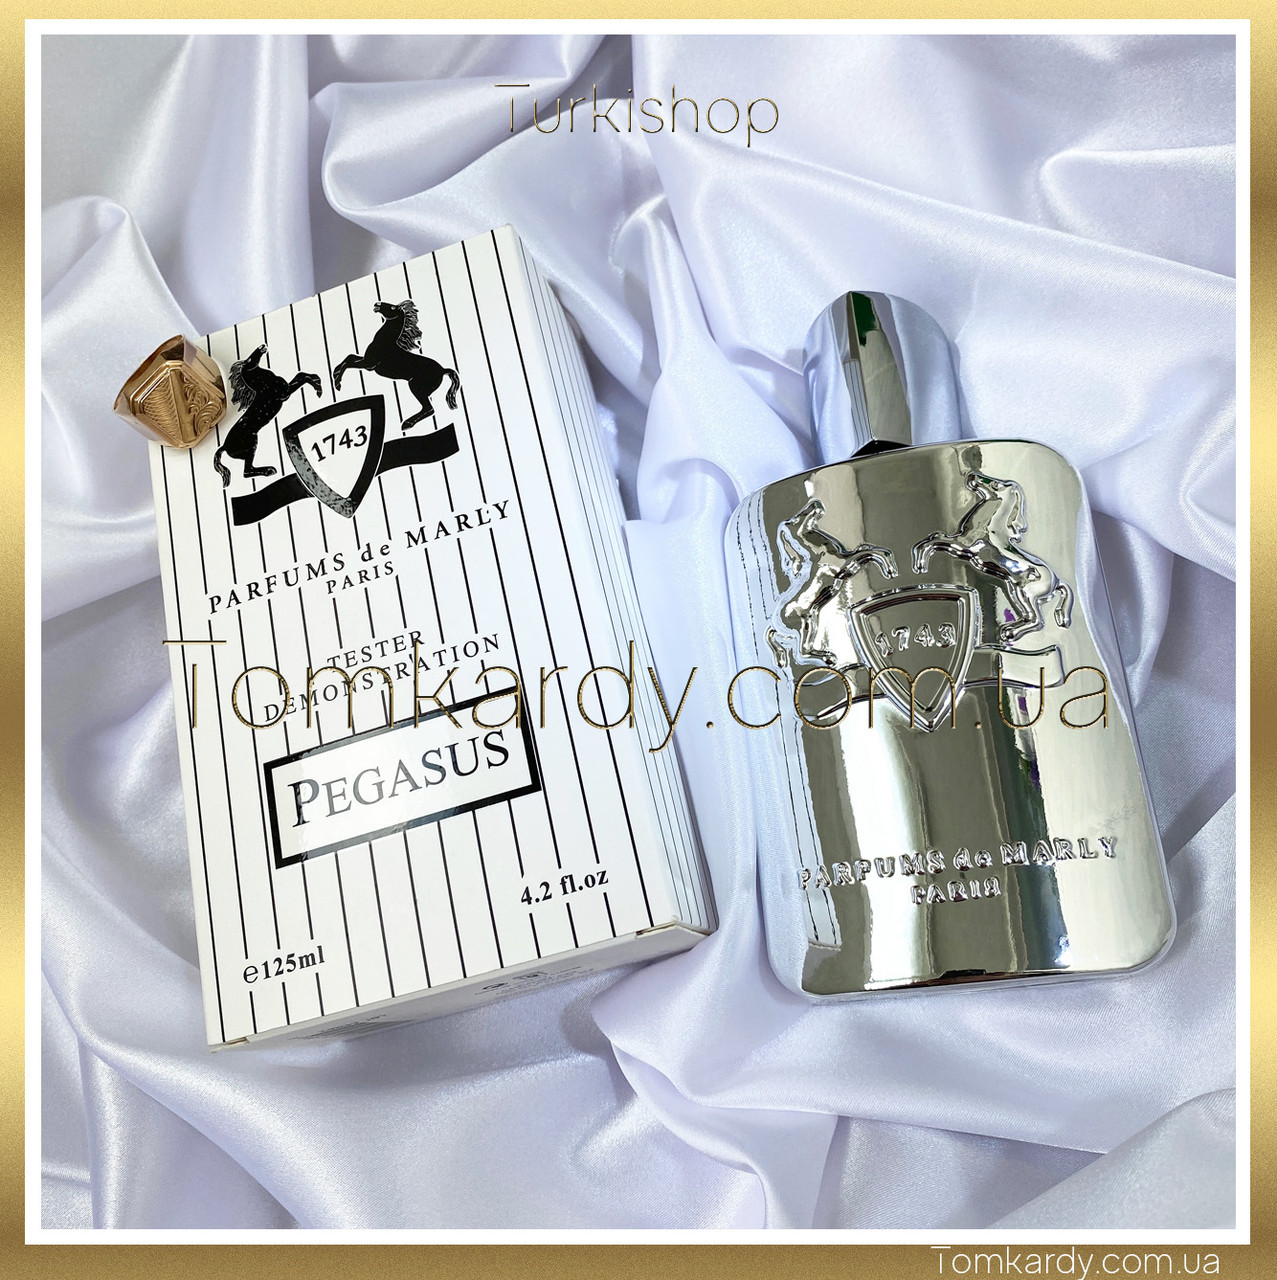 Чоловічі парфуми Parfums de Marly Pegasus [Tester] 125 ml. Парфум де Марлі Пегасус (Тестер) 125 мл.